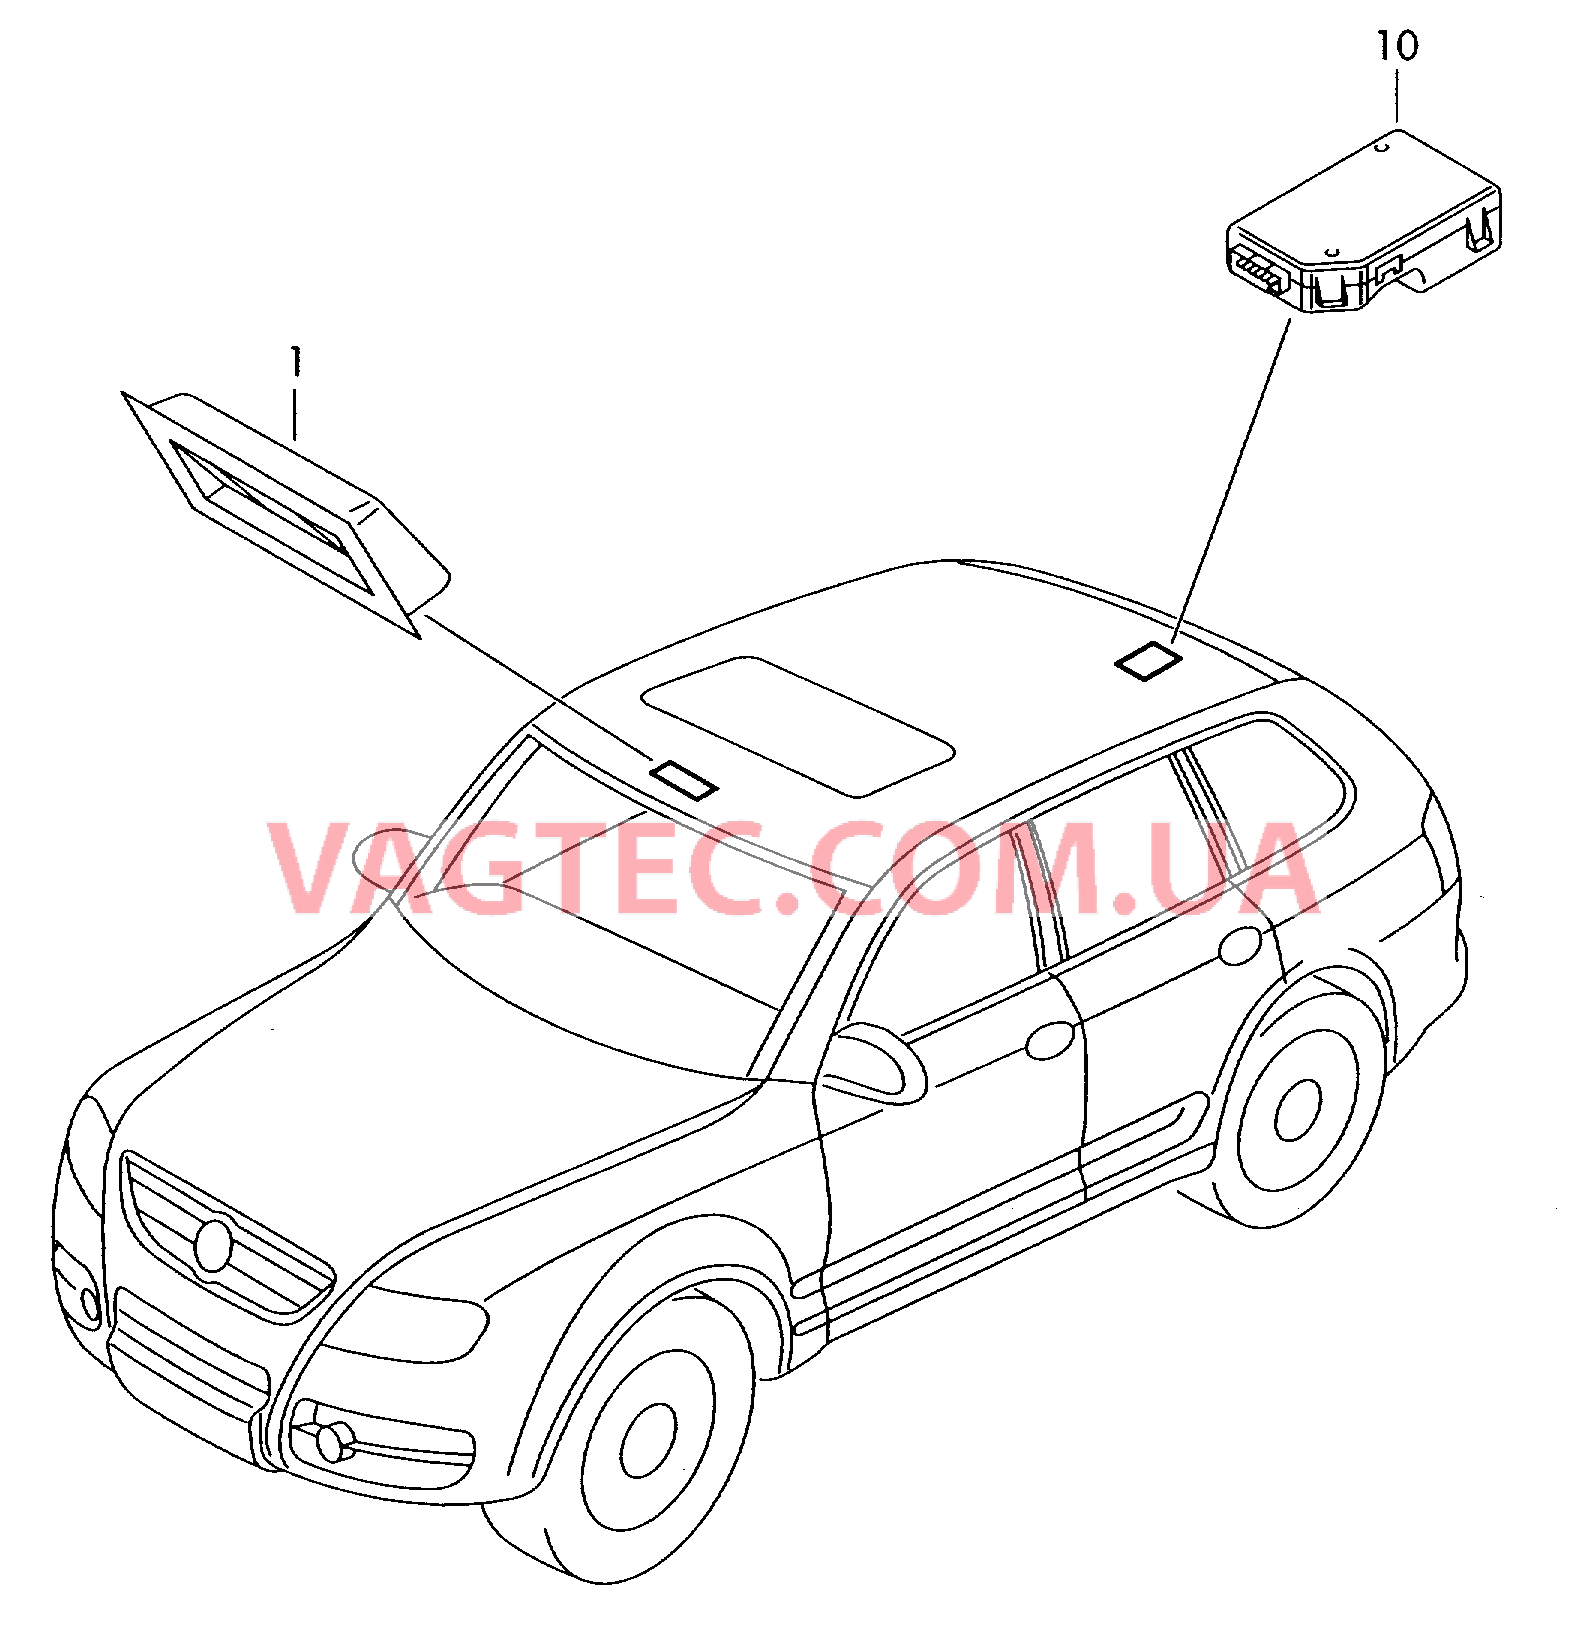 Панель управления и индикации Датчик магнитного поля для автомобилей с системой KOMPASS  для VOLKSWAGEN Touareg 2007